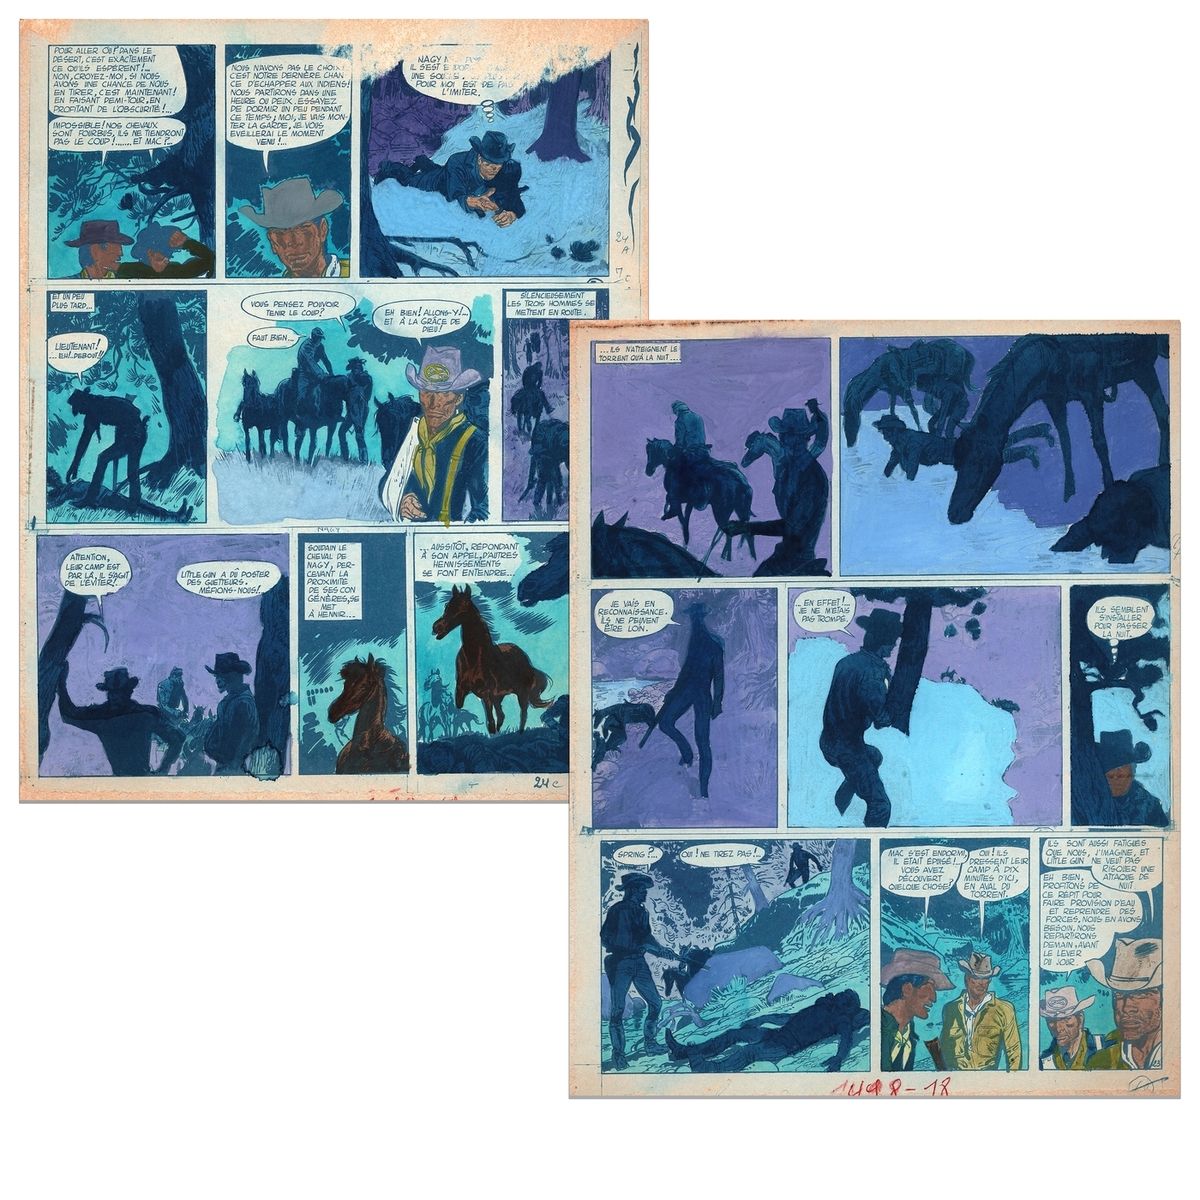 Jijé : 杰里-斯普林，为1966年12月29日出版的《斯皮鲁报》第1498期上的 "决斗 "一集的第23和24页绘制水彩画草图。尺寸：2X 20,2 x &hellip;